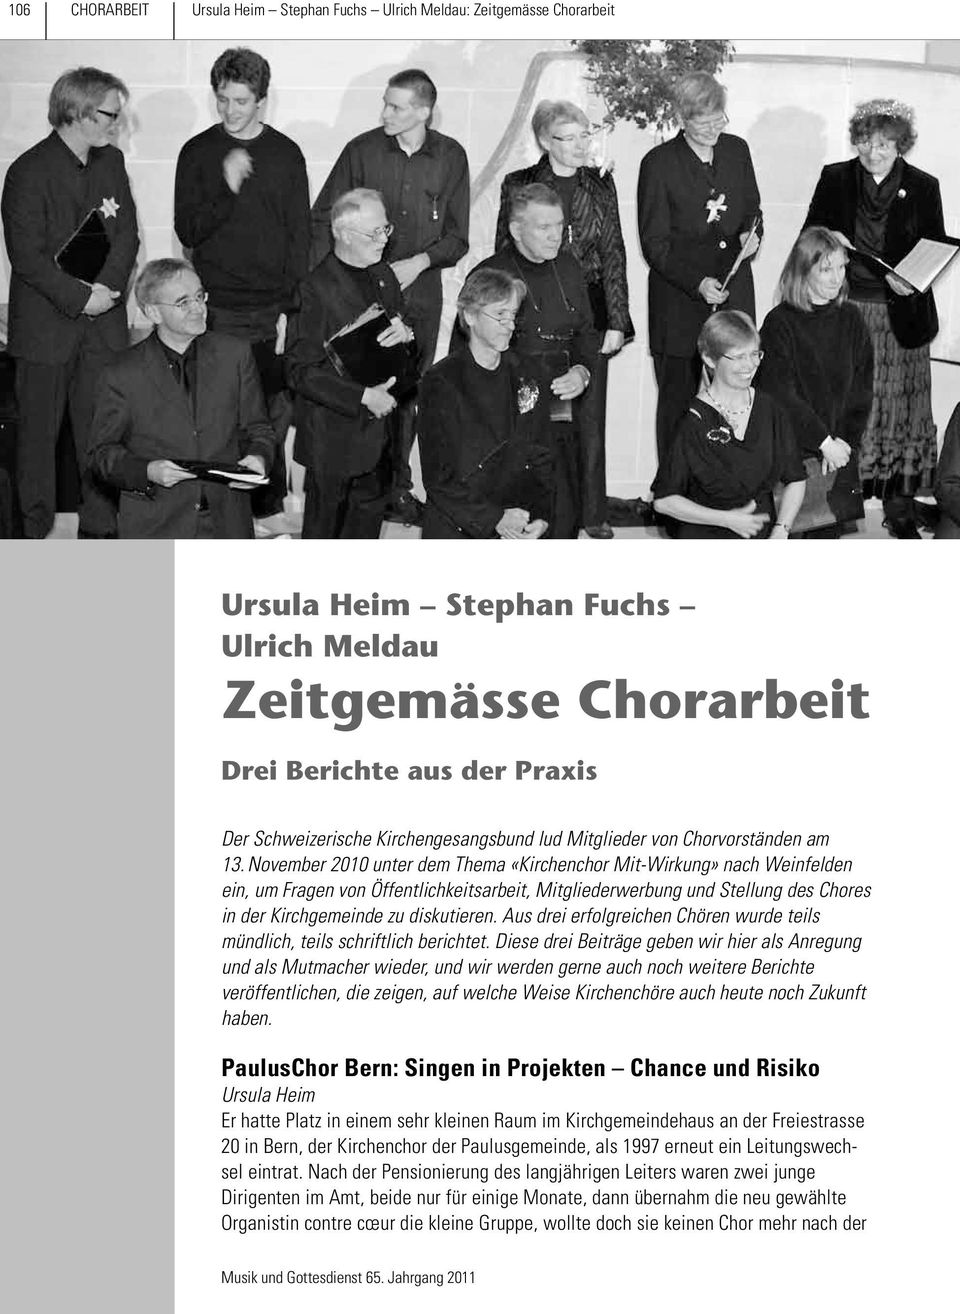 November 2010 unter dem Thema «Kirchenchor Mit-Wirkung» nach Weinfelden ein, um Fragen von Öffentlichkeitsarbeit, Mitgliederwerbung und Stellung des Chores in der Kirchgemeinde zu diskutieren.